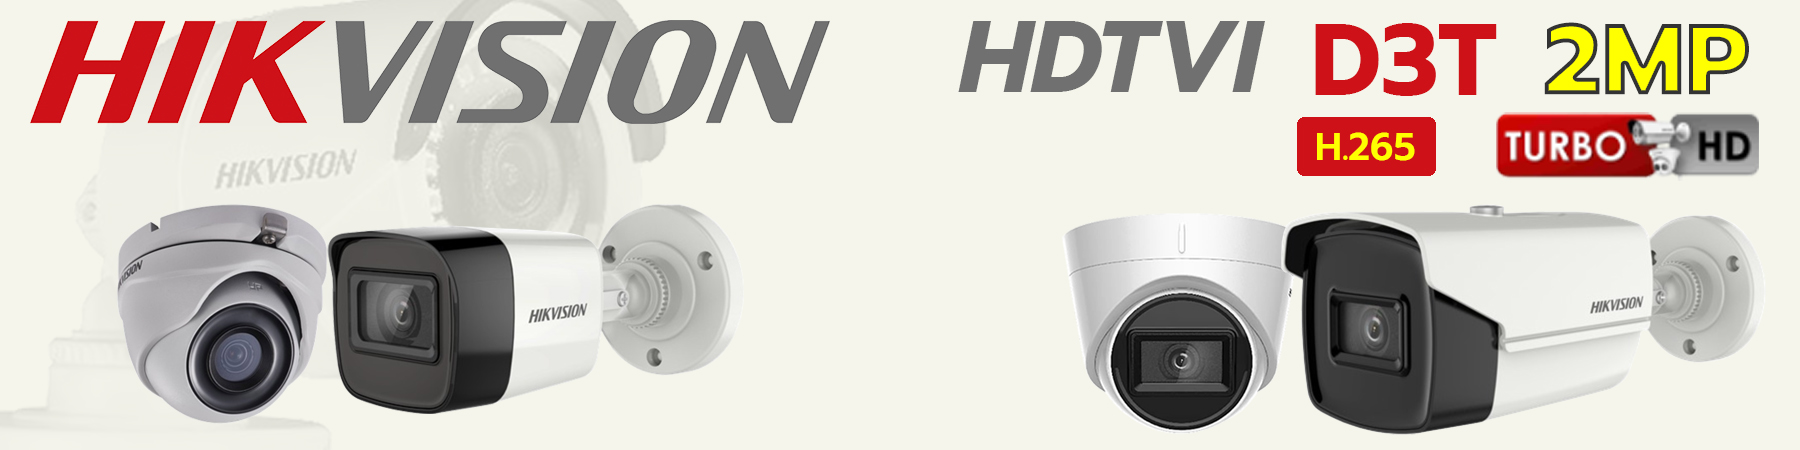 กล้องวงจรปิด Hikvision, กล้อง Hikvision, Hikvision Ultra Low-Light, DS-2CE16D3T-I3F, DS-2CE16D3T-ITF, DS-2CE76D3T-ITMF, DS-2CE16D3T-IT3F, DS-2CE78D3T-IT3F